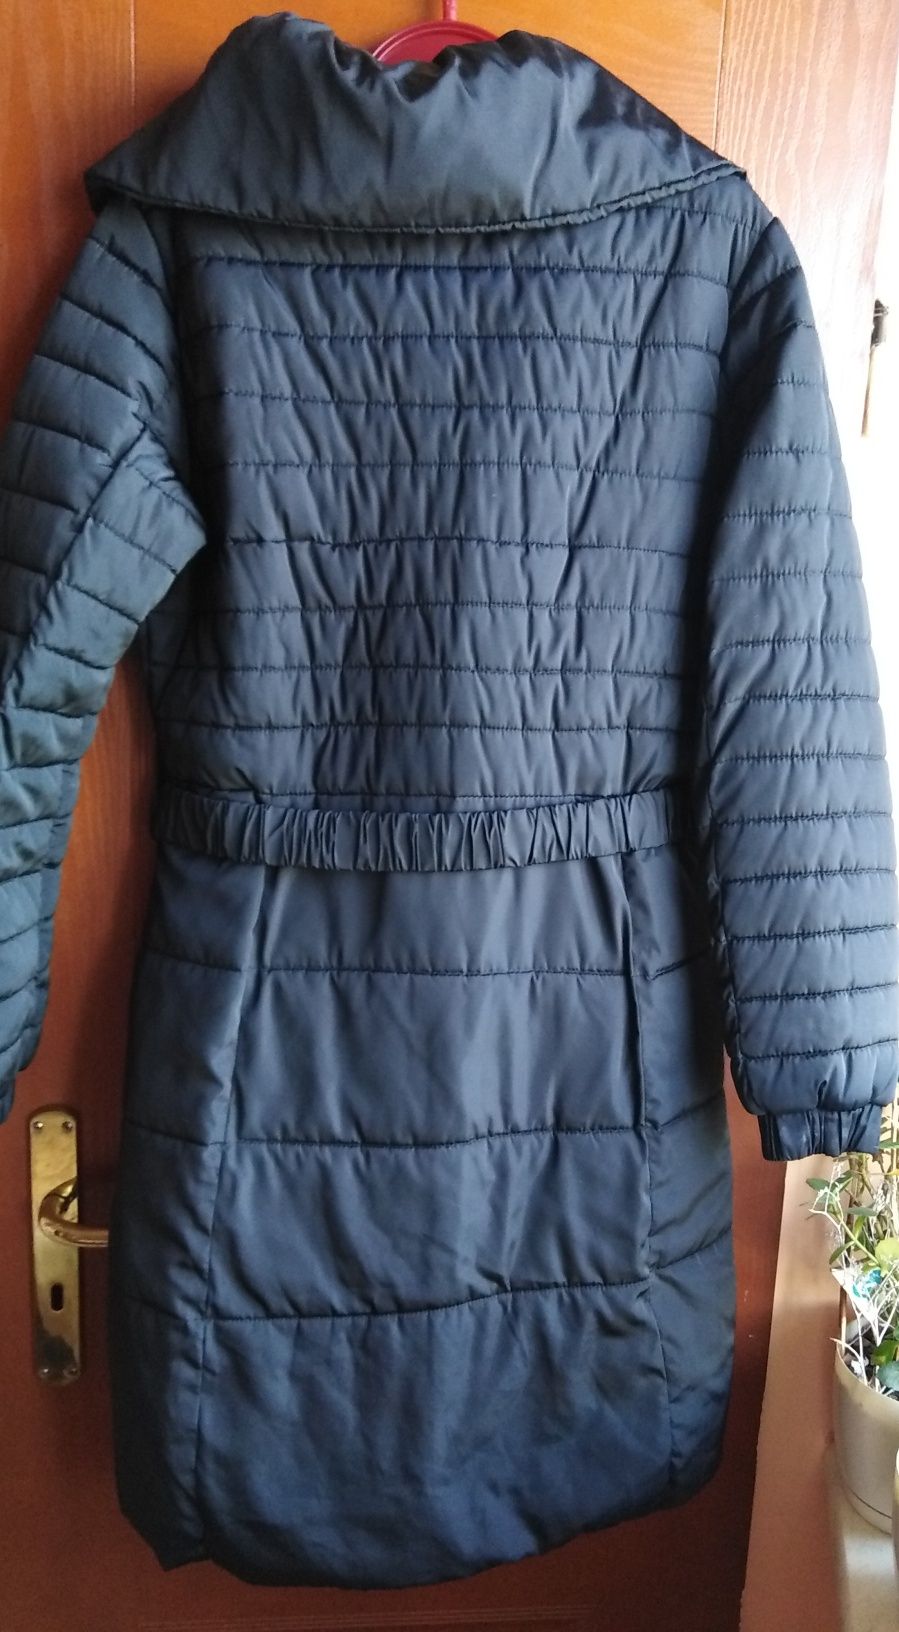 Płaszcz damski zimowy rozmiar XL kurtka zimowa